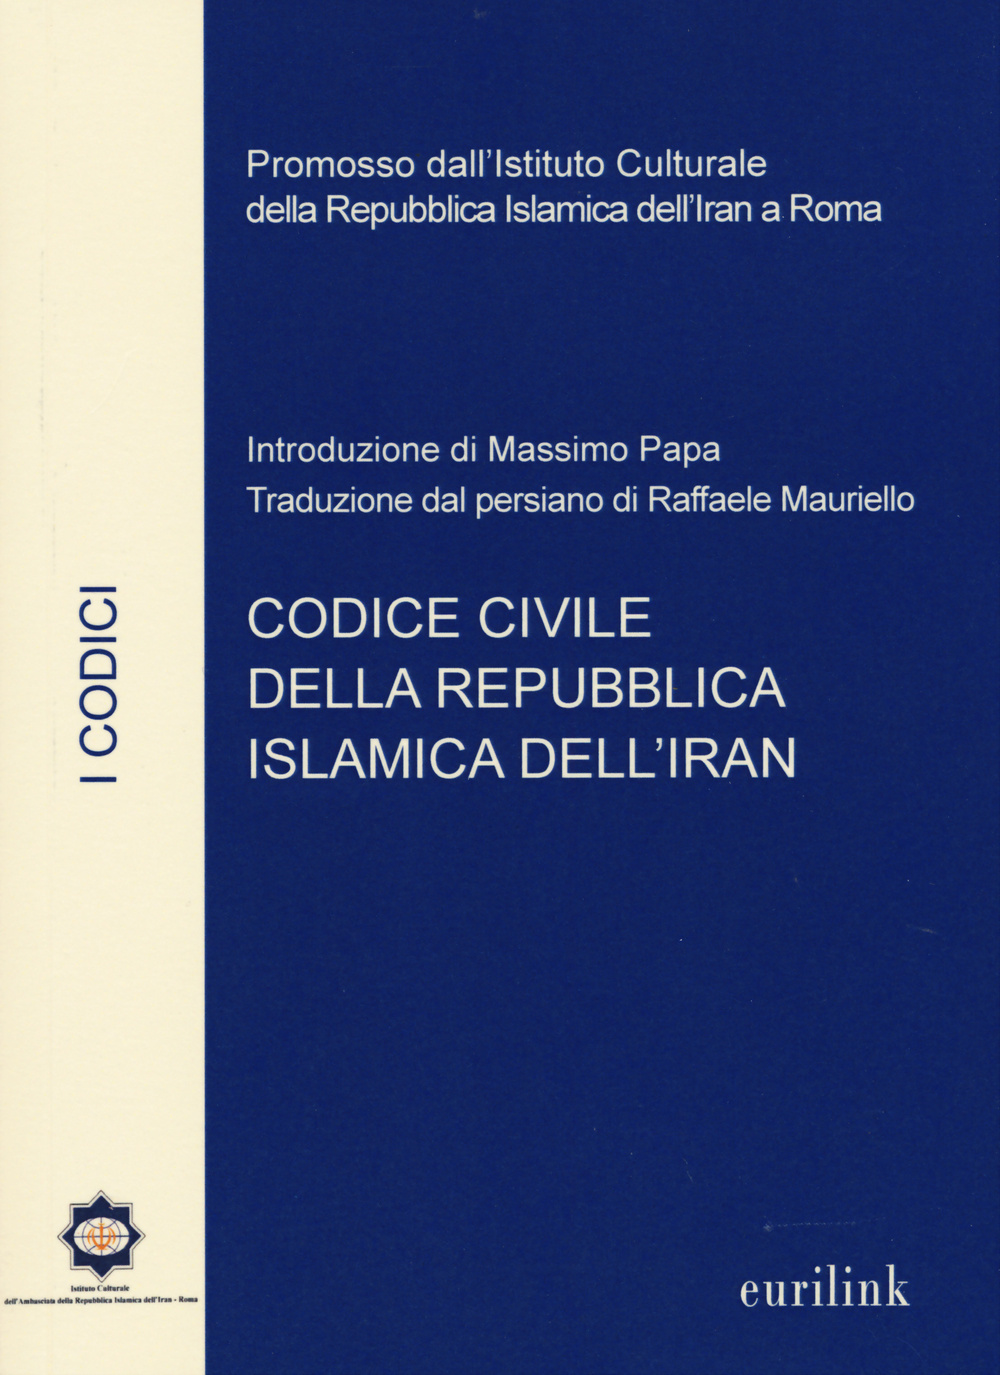 Image of Codice civile della repubblica islamica dell'Iran